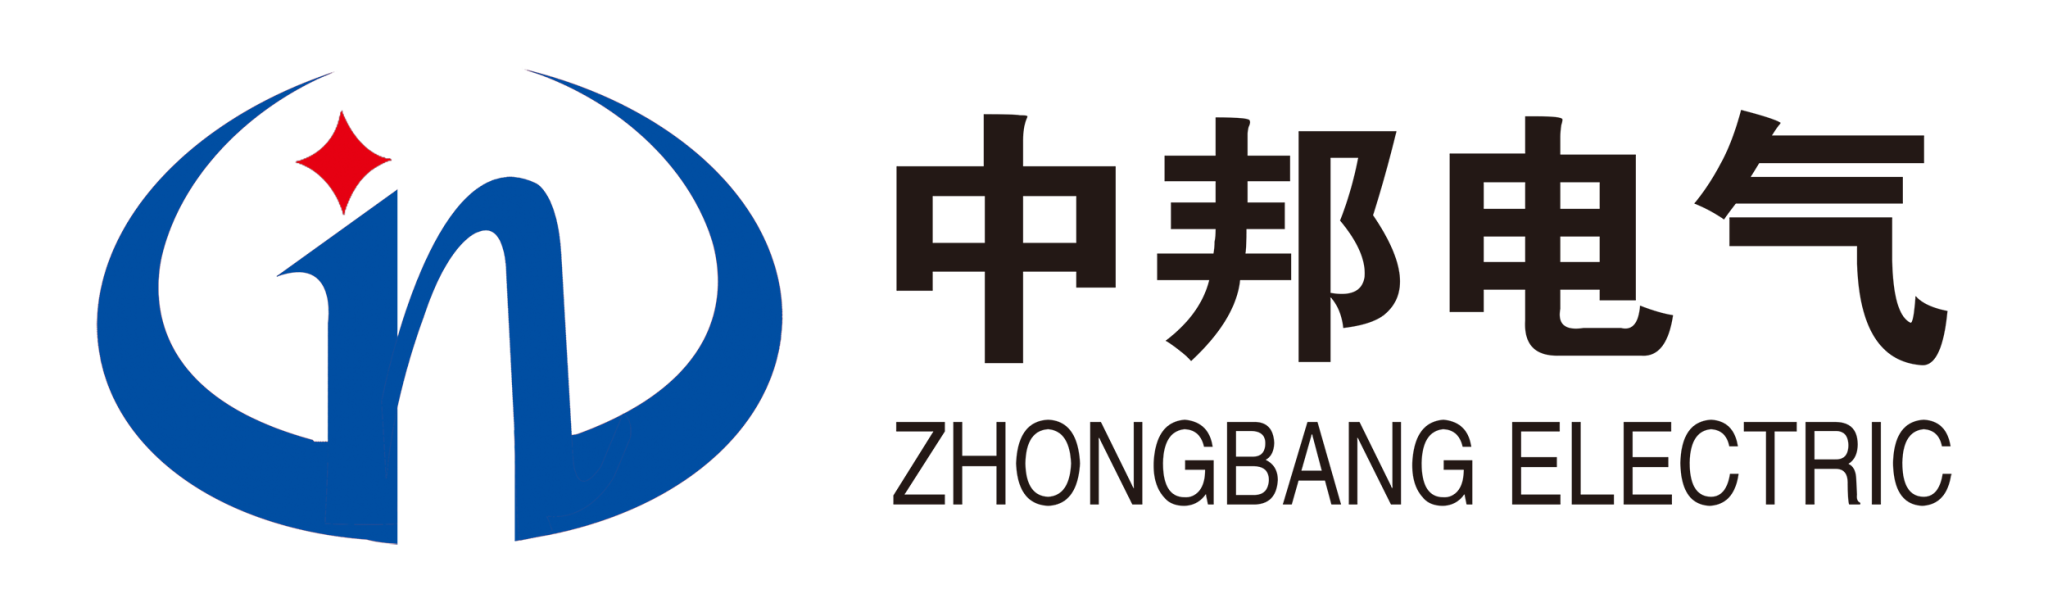 中邦电气logo